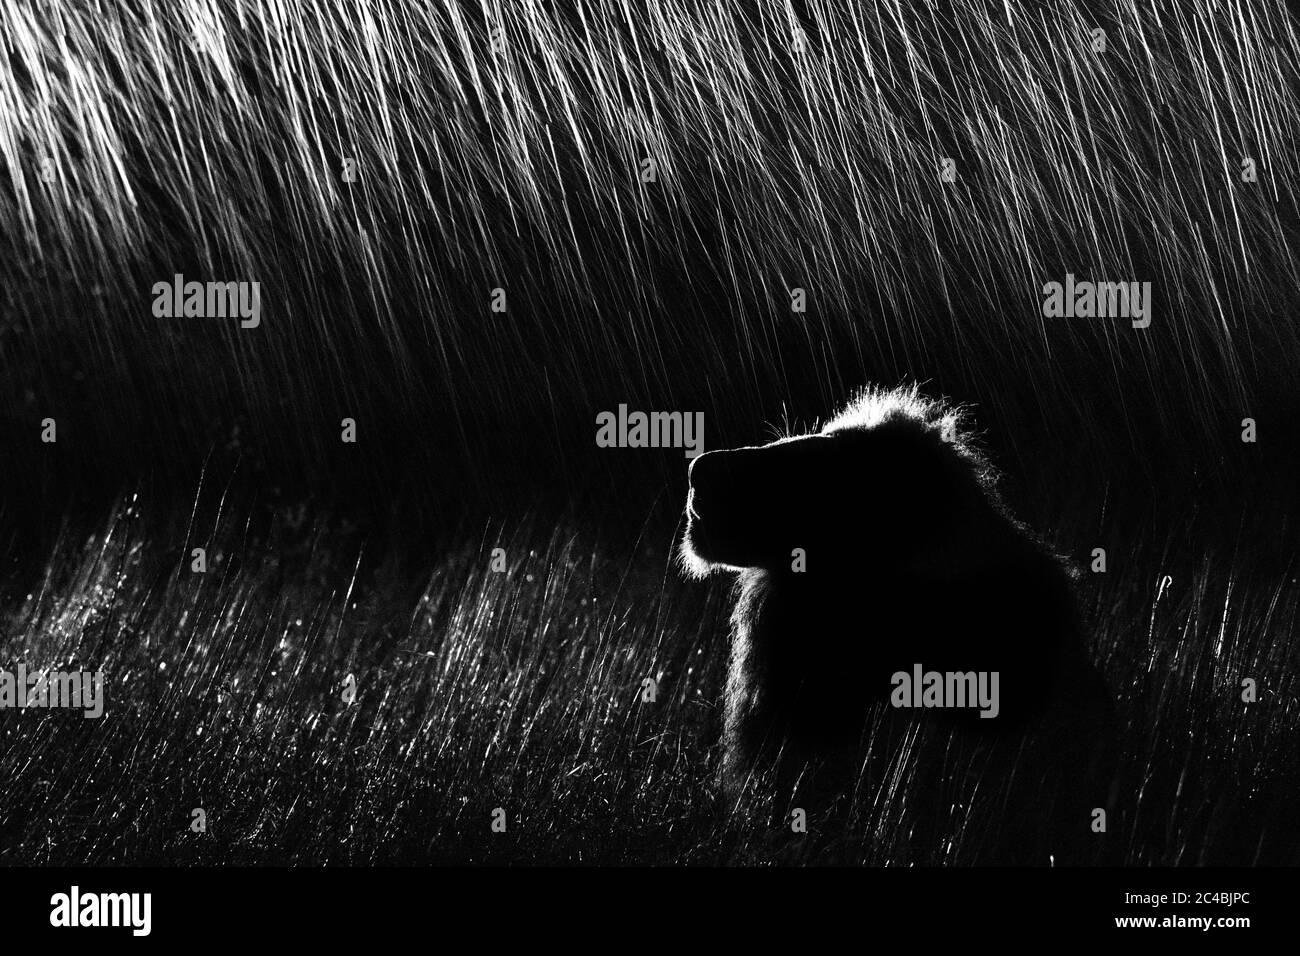 Un profilo laterale di un leone maschio, Panthera leo, adagiato in erba alta, che guarda in su, di notte, illuminato da un riflettore, in bianco e nero Foto Stock